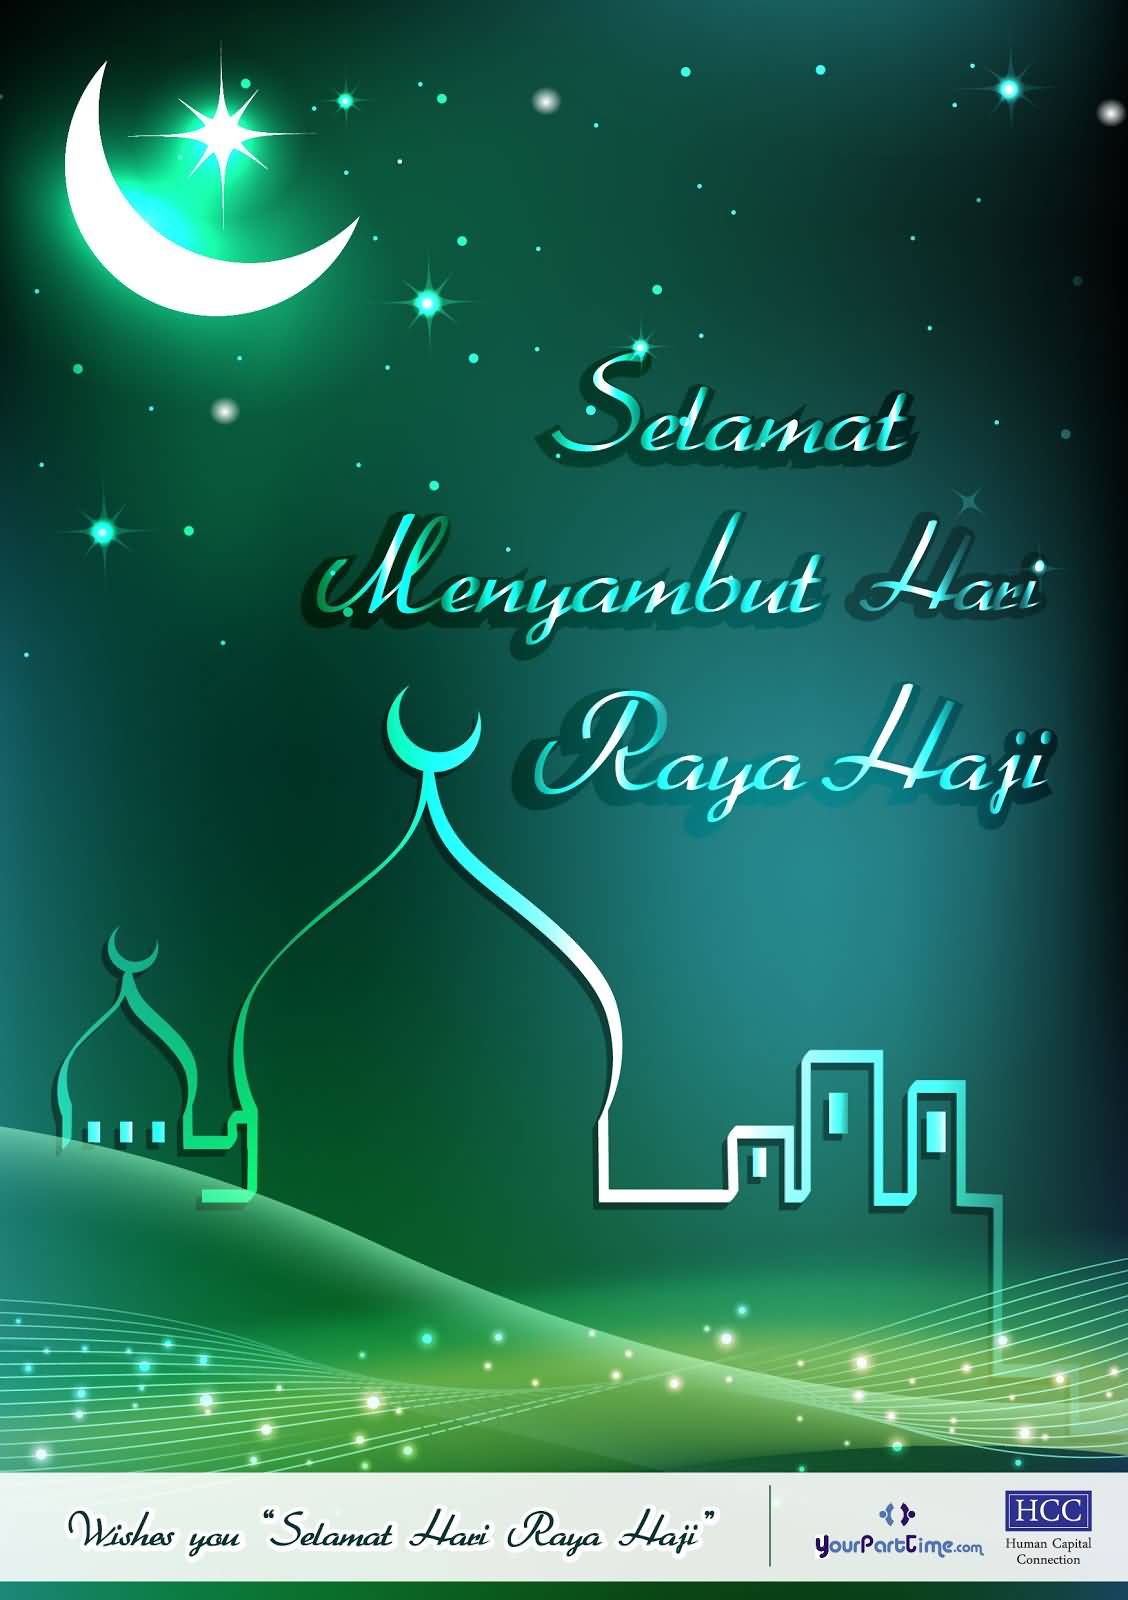 Selamat Menyambut Hari Raya Haji Greetings Card